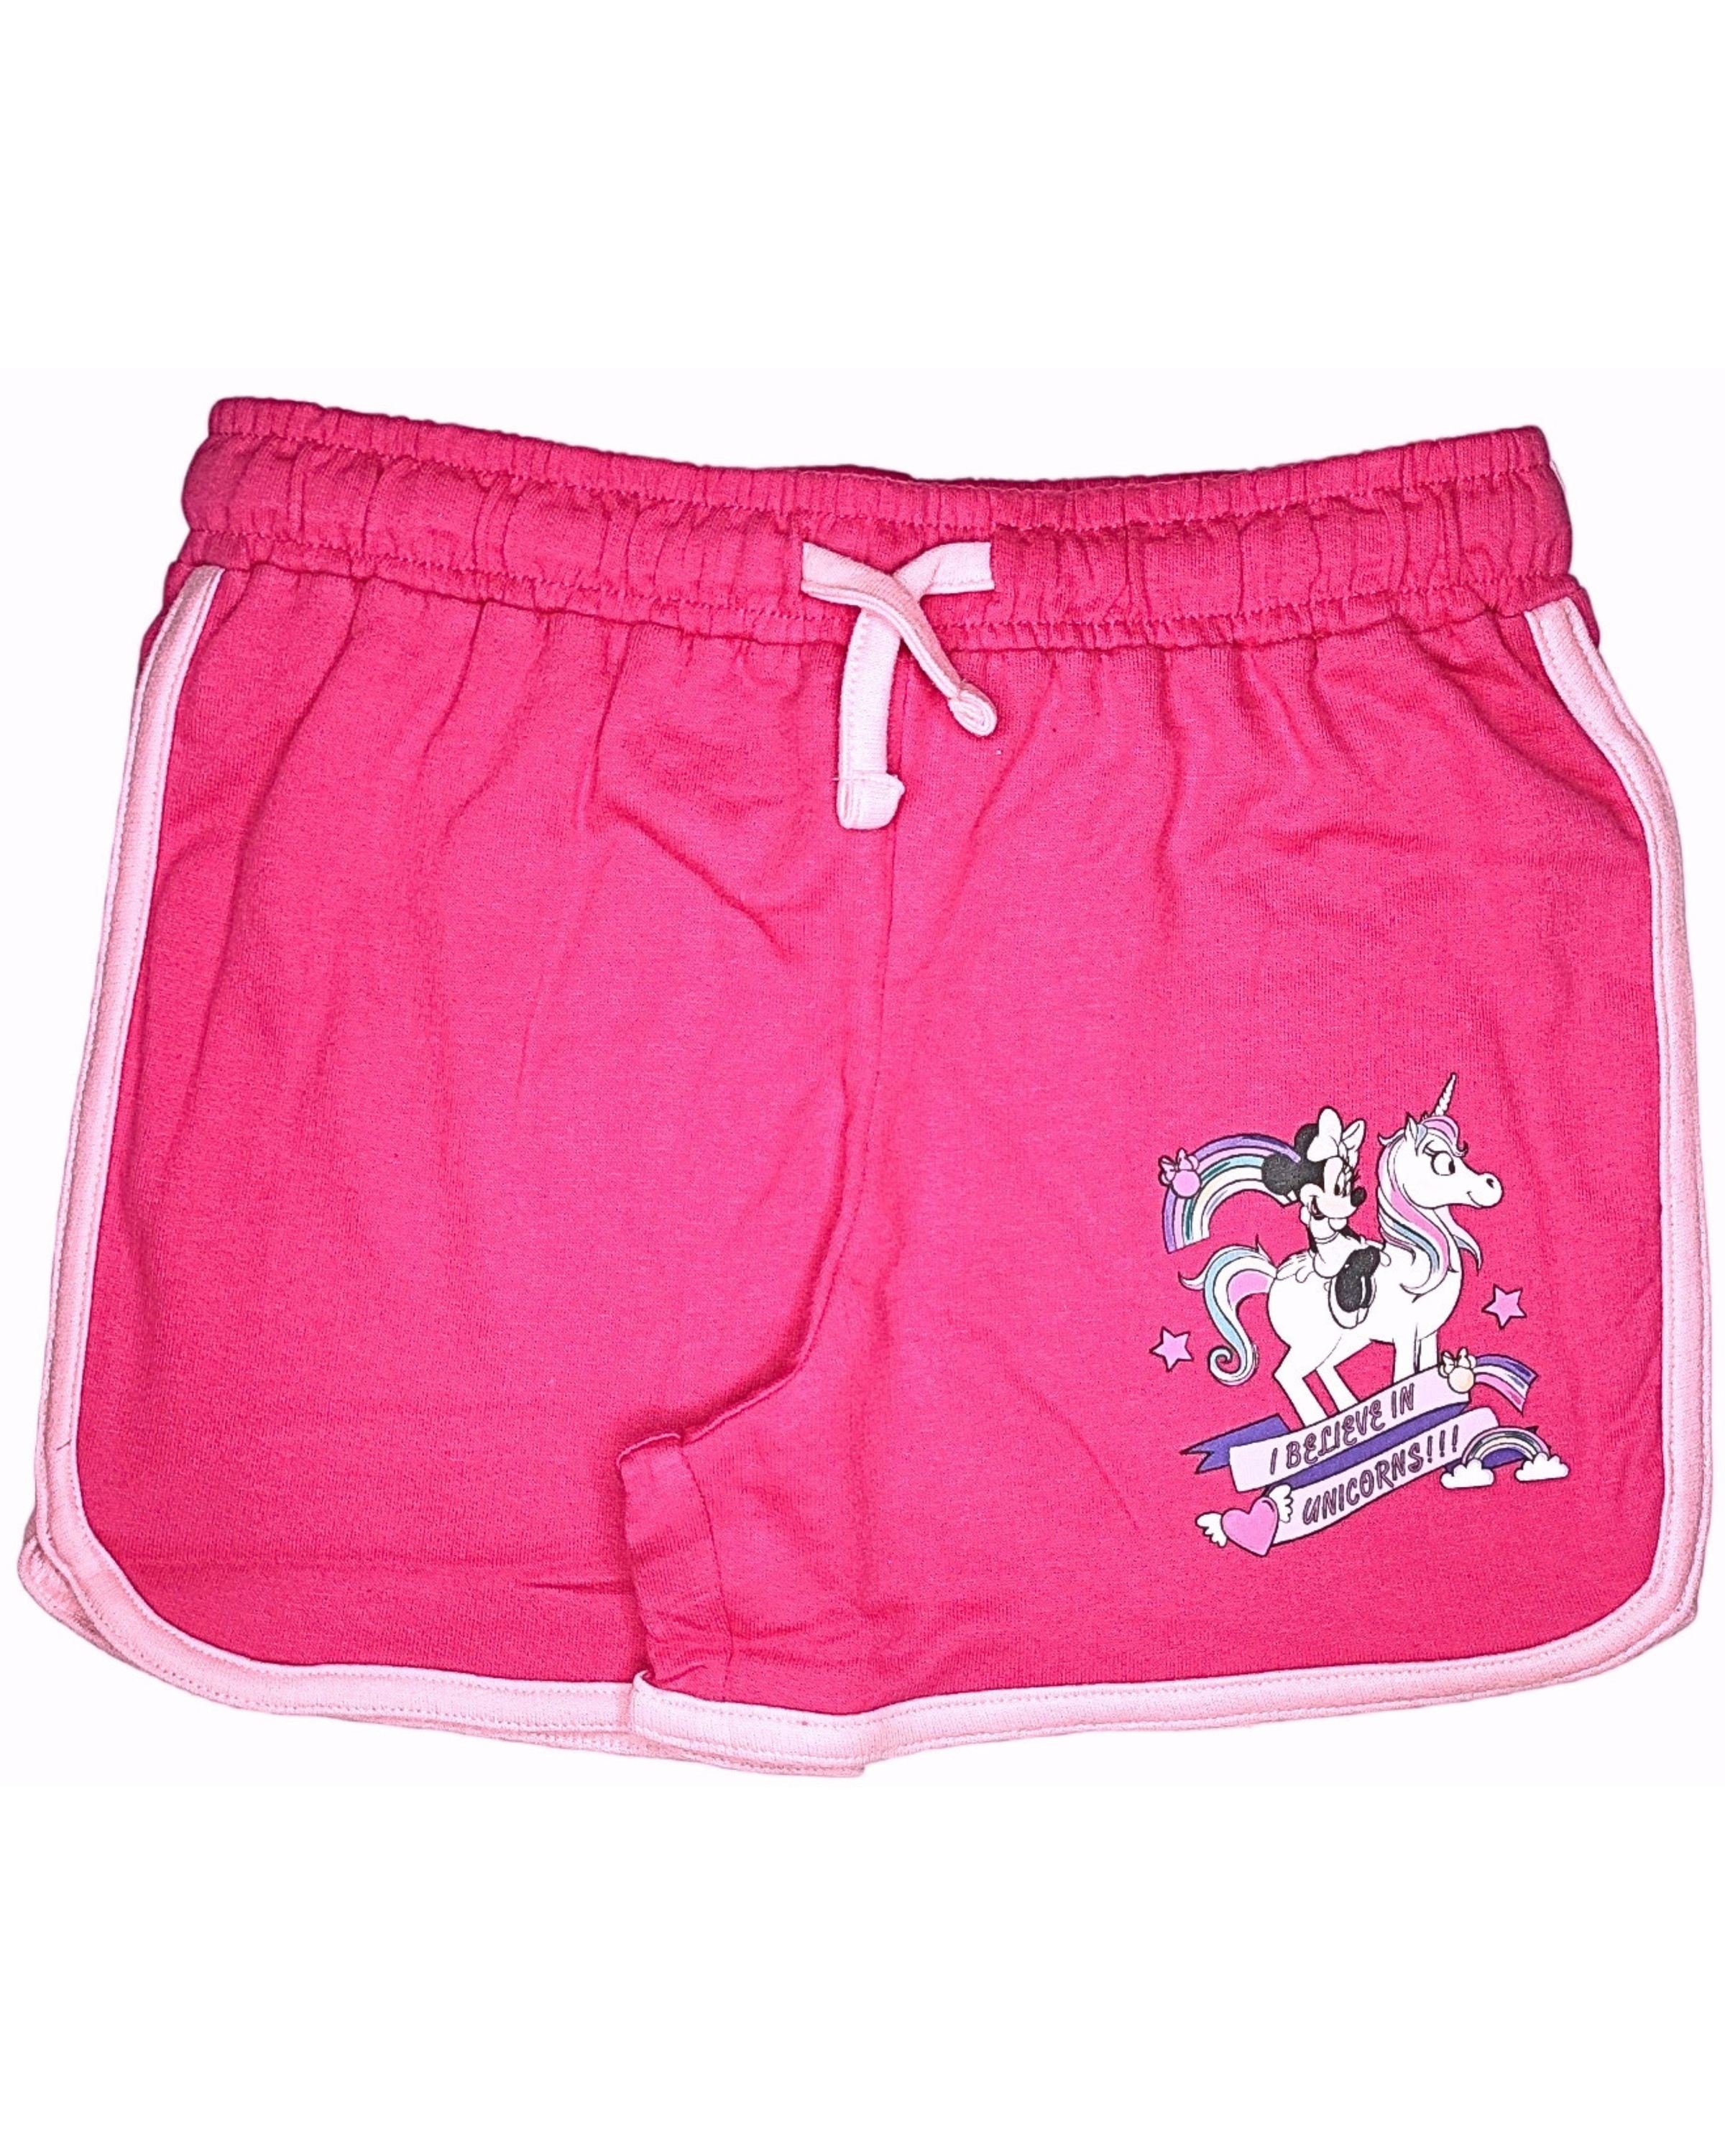 Disney Minnie Mouse Shorts Minnie Maus - I believe in Unicorns Mädchen kurze Hose aus Baumwolle Gr. 98 - 128 cm Pink